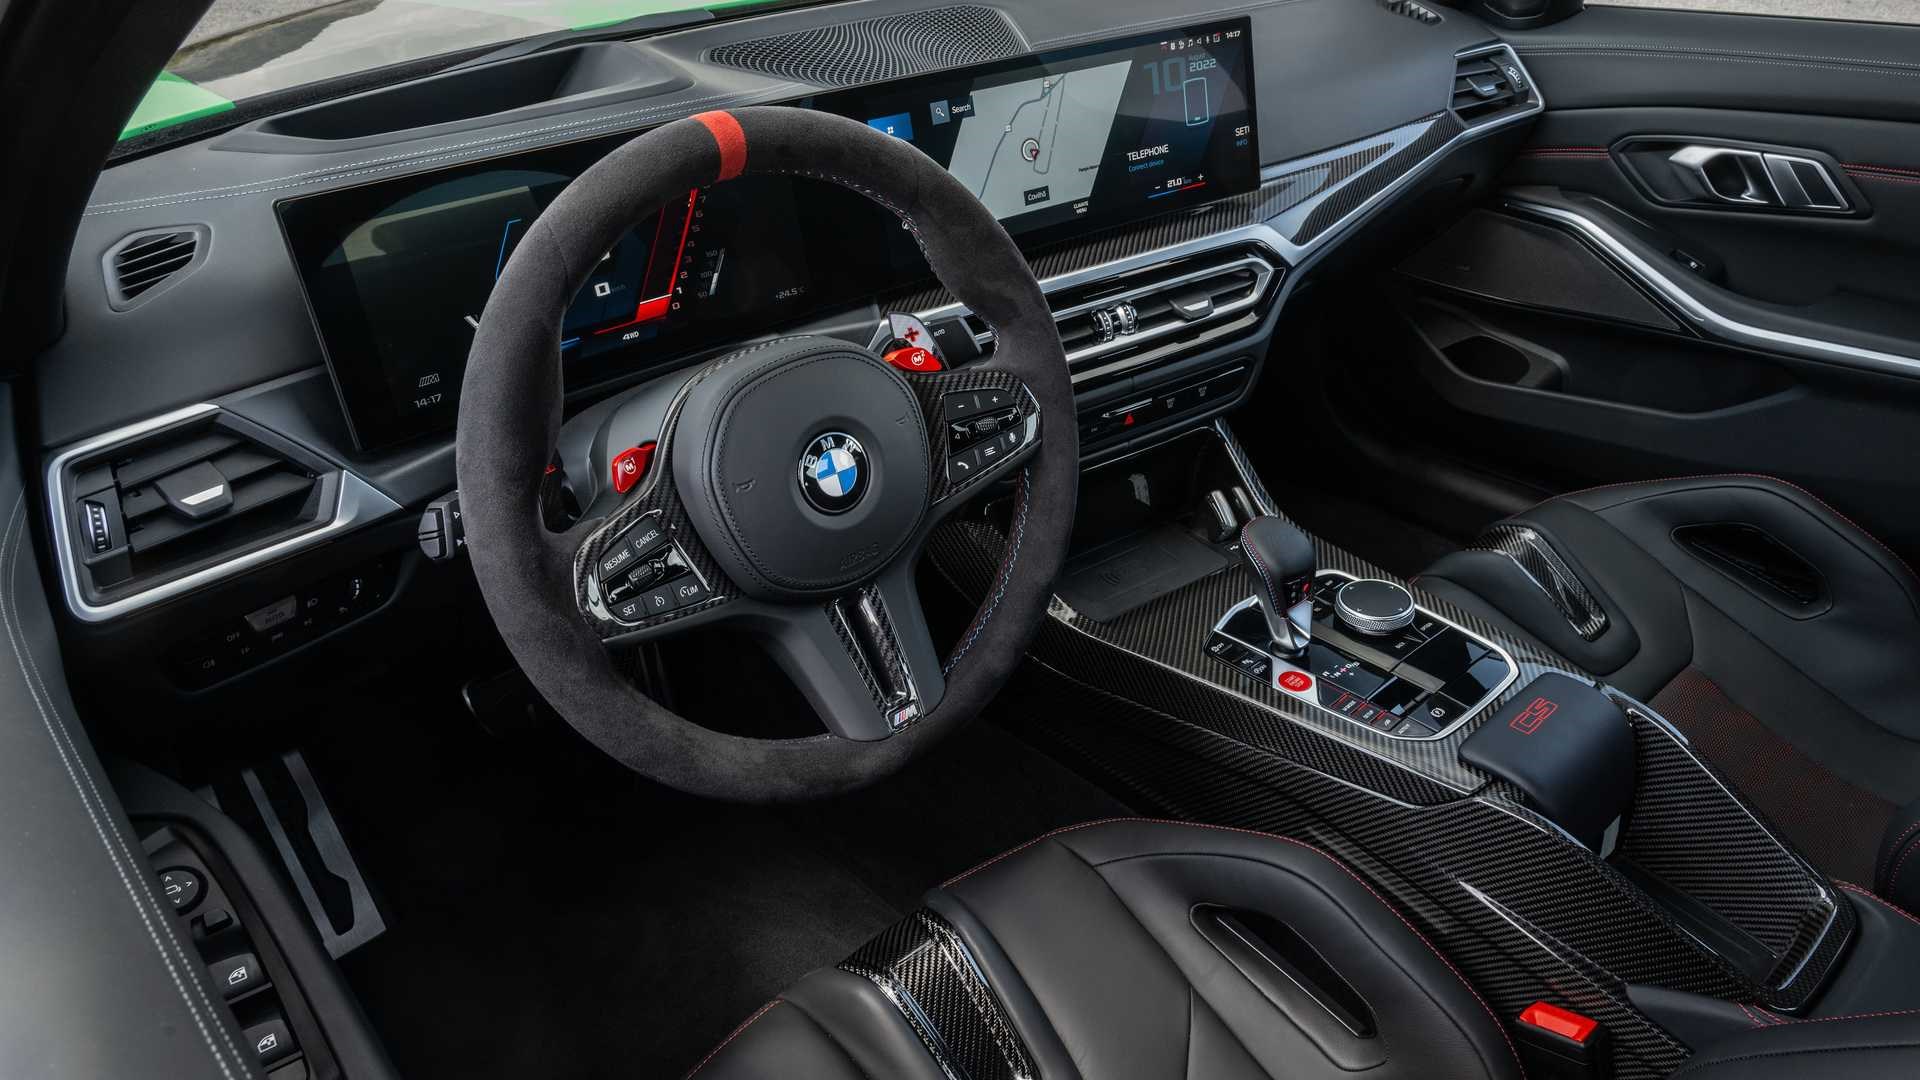 Yeni BMW M3 CS tanıtıldı: İşte tasarımı ve özellikleri